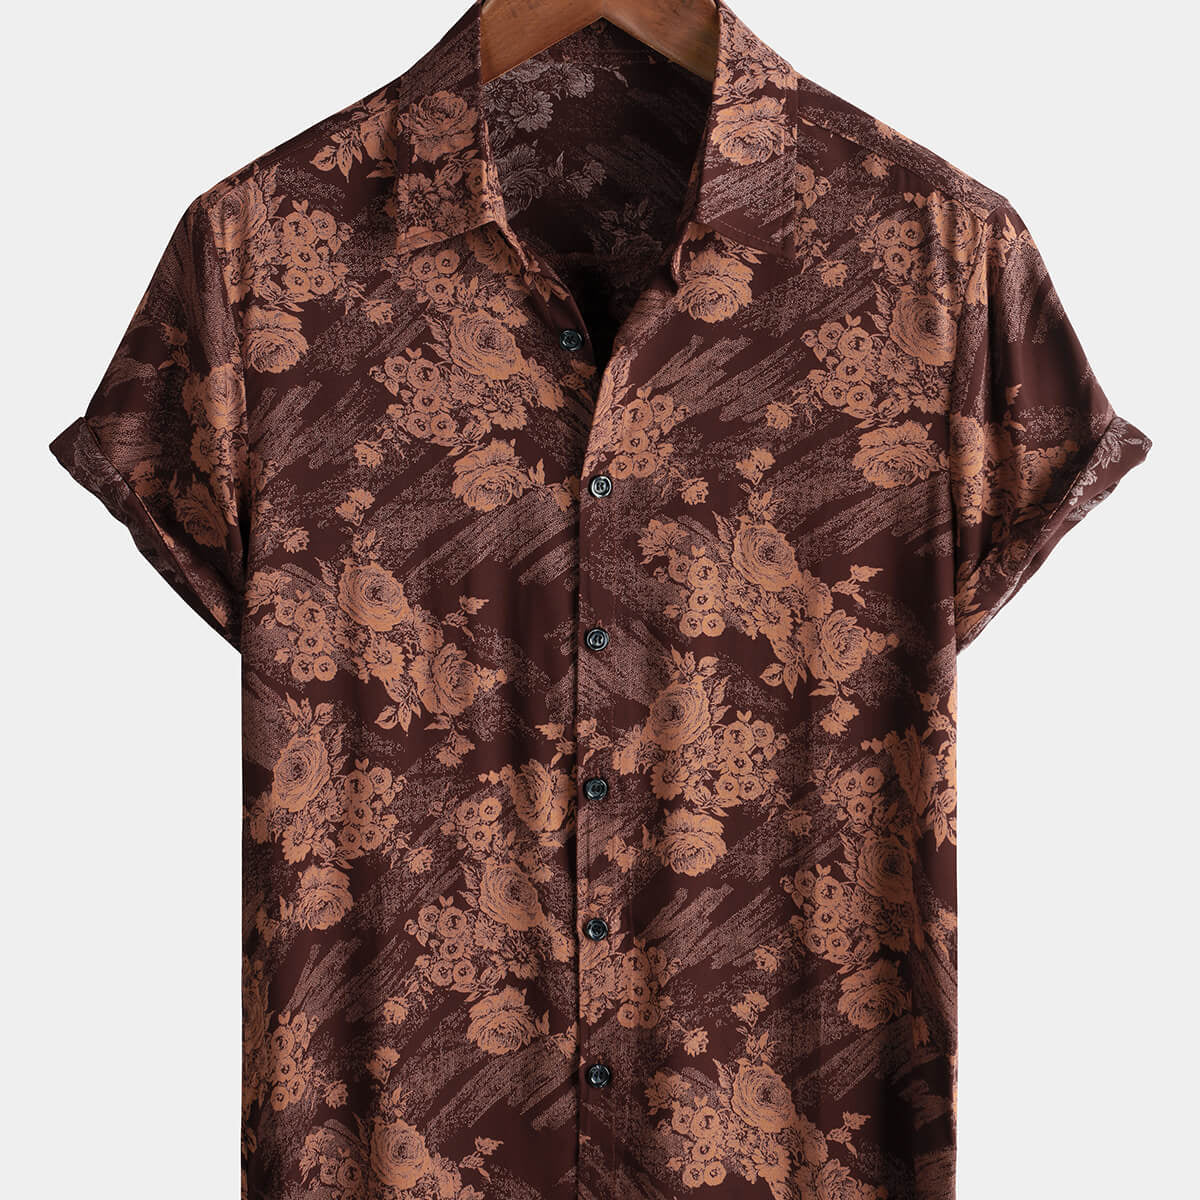 Men's Brown Floral Print Holiday Summer Hawaiian Shirt